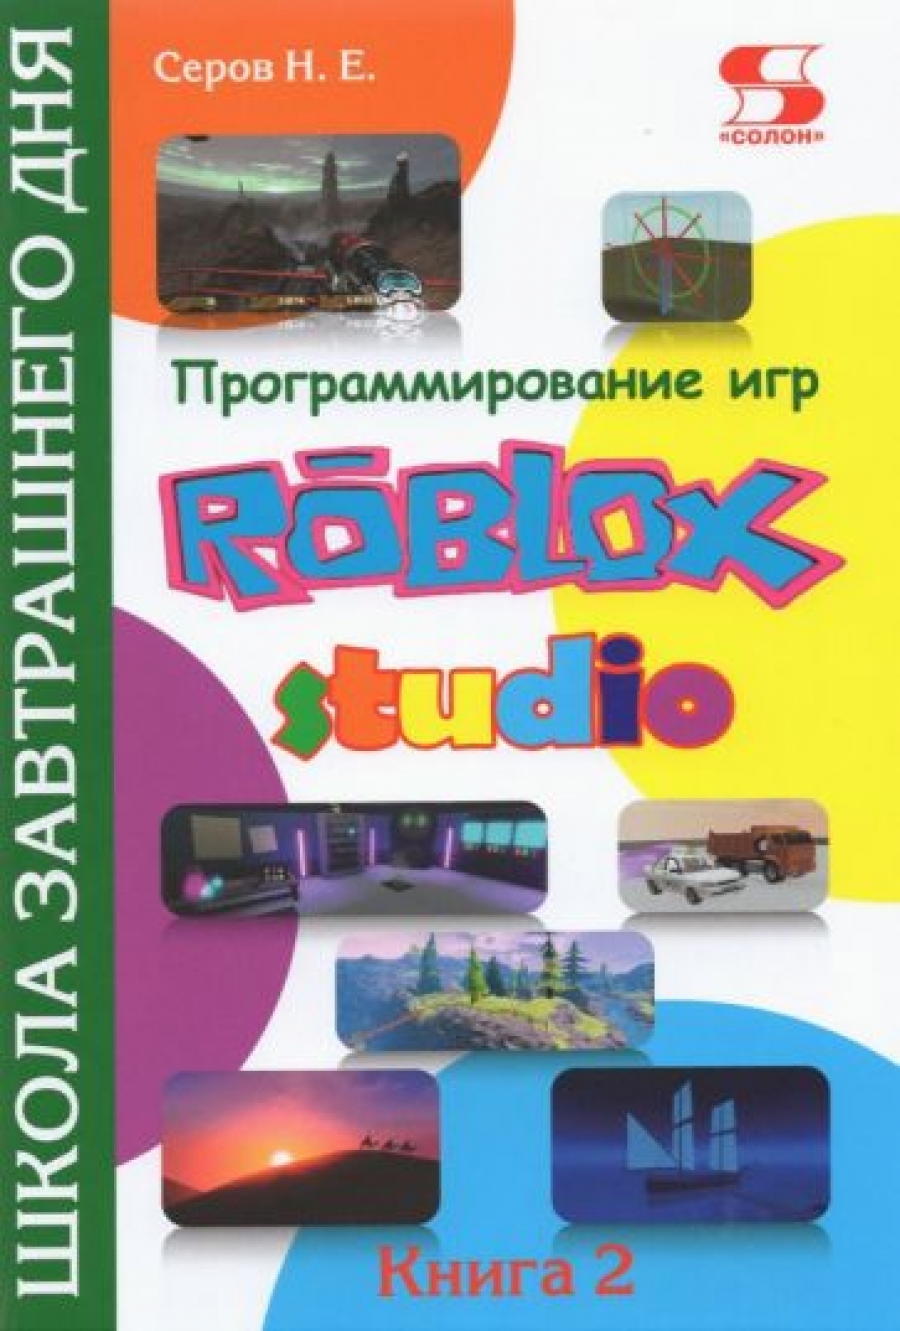 Серов Н. Программирование игр в Roblox Studio. Книга 2. Школа завтрашнего дня 